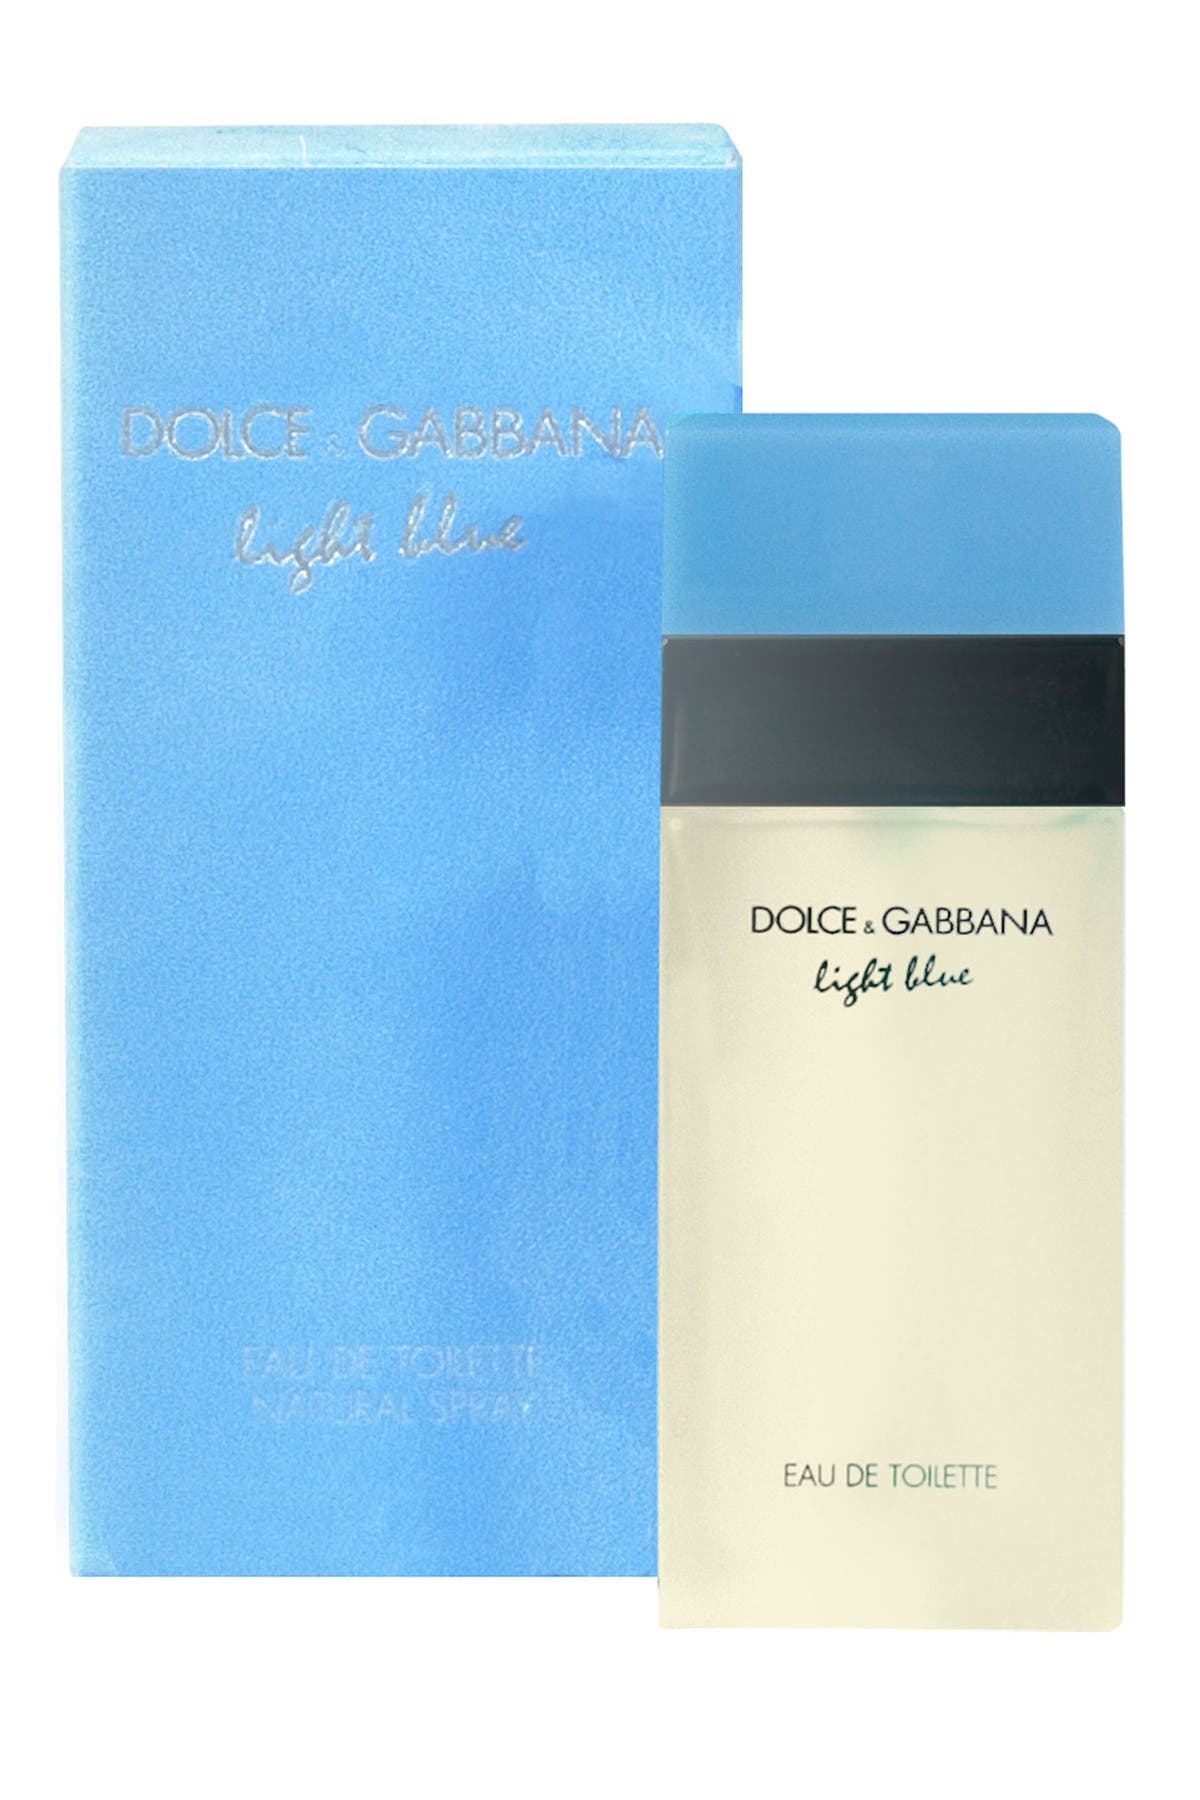 dolce gabbana light blue 1.6